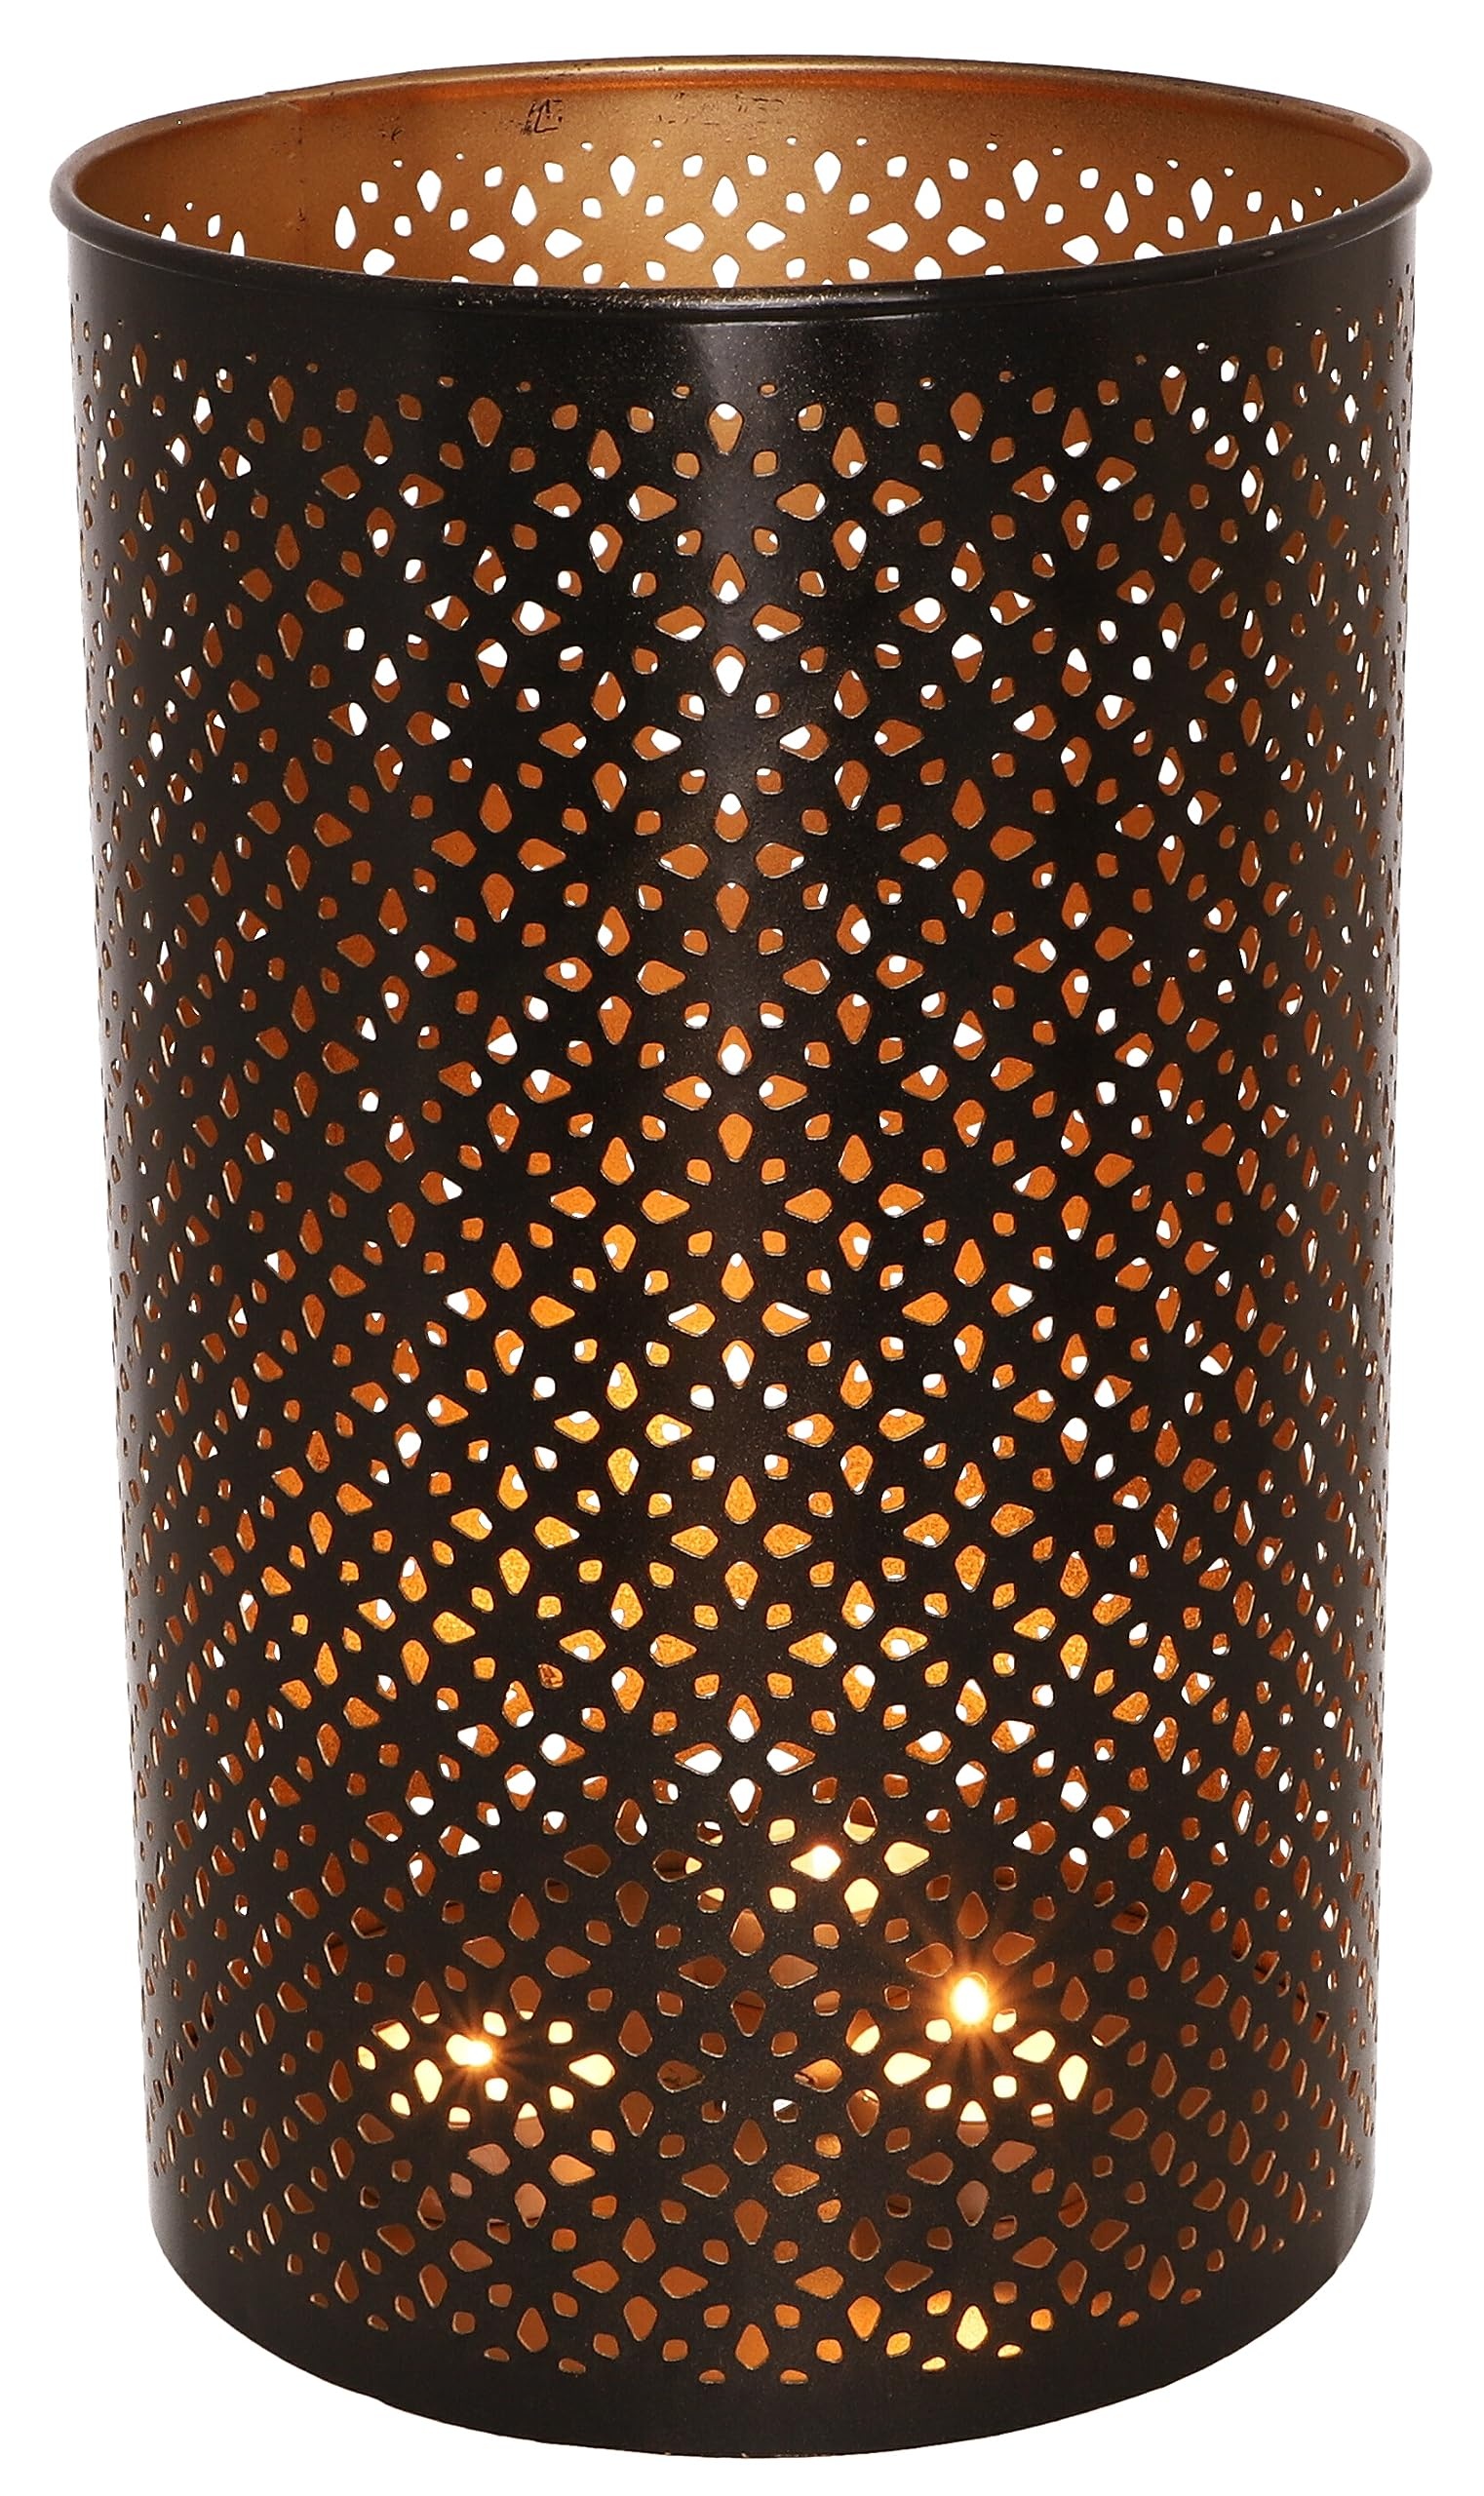 GURU SHOP Runde Metall Windlicht Leuchte, Passend für Teelicht Kerzen Oder als Deckenlampe Verwendbar - Modell 6, Braun, Größe: 25 cm, Teelichthalter & Kerzenhalter